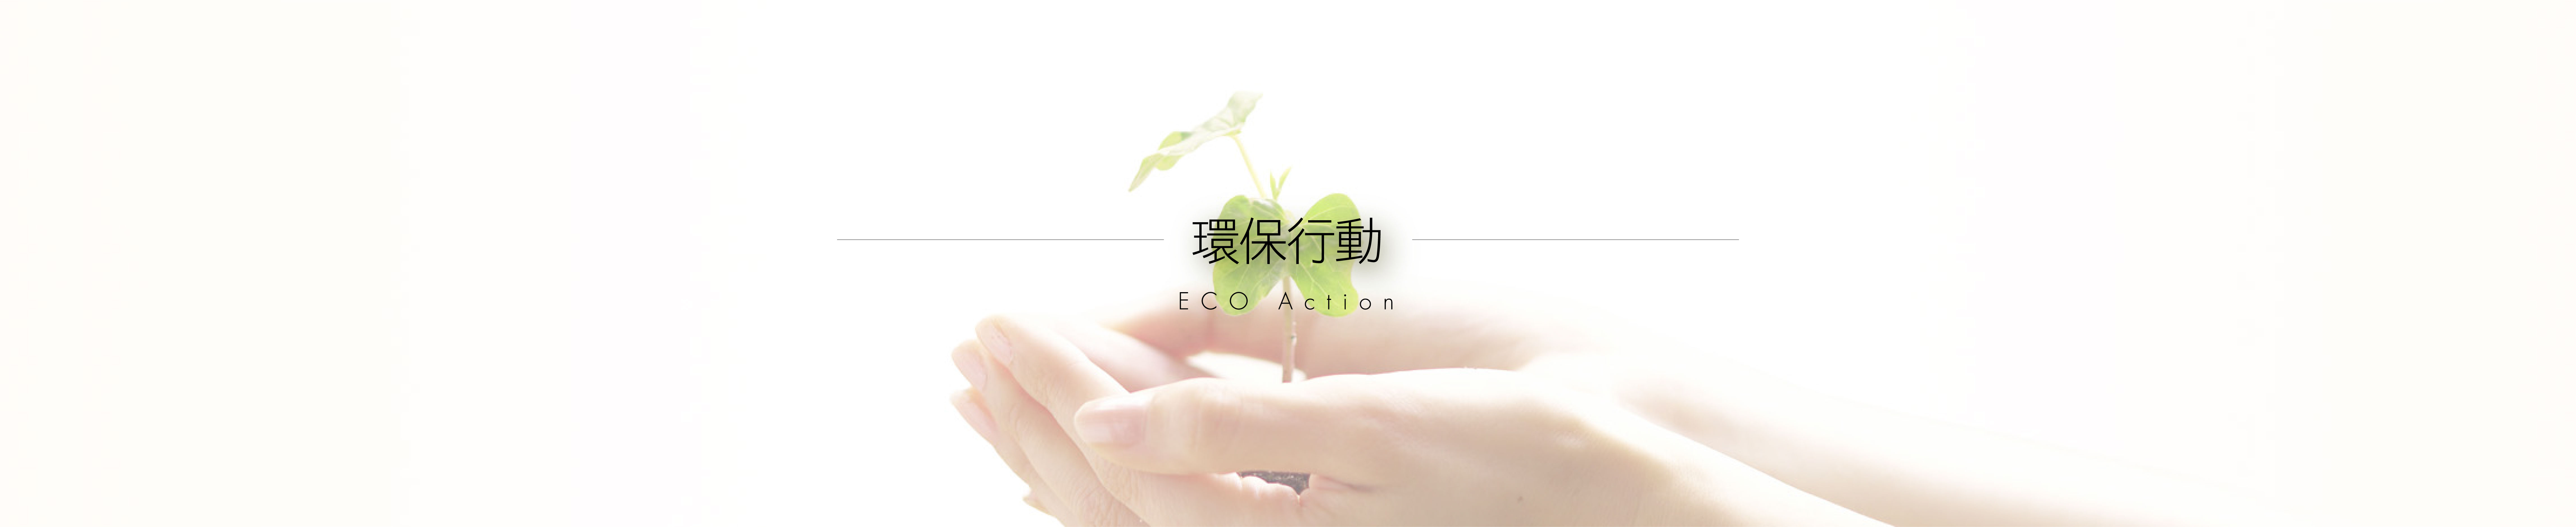 環保行動 ECO Action